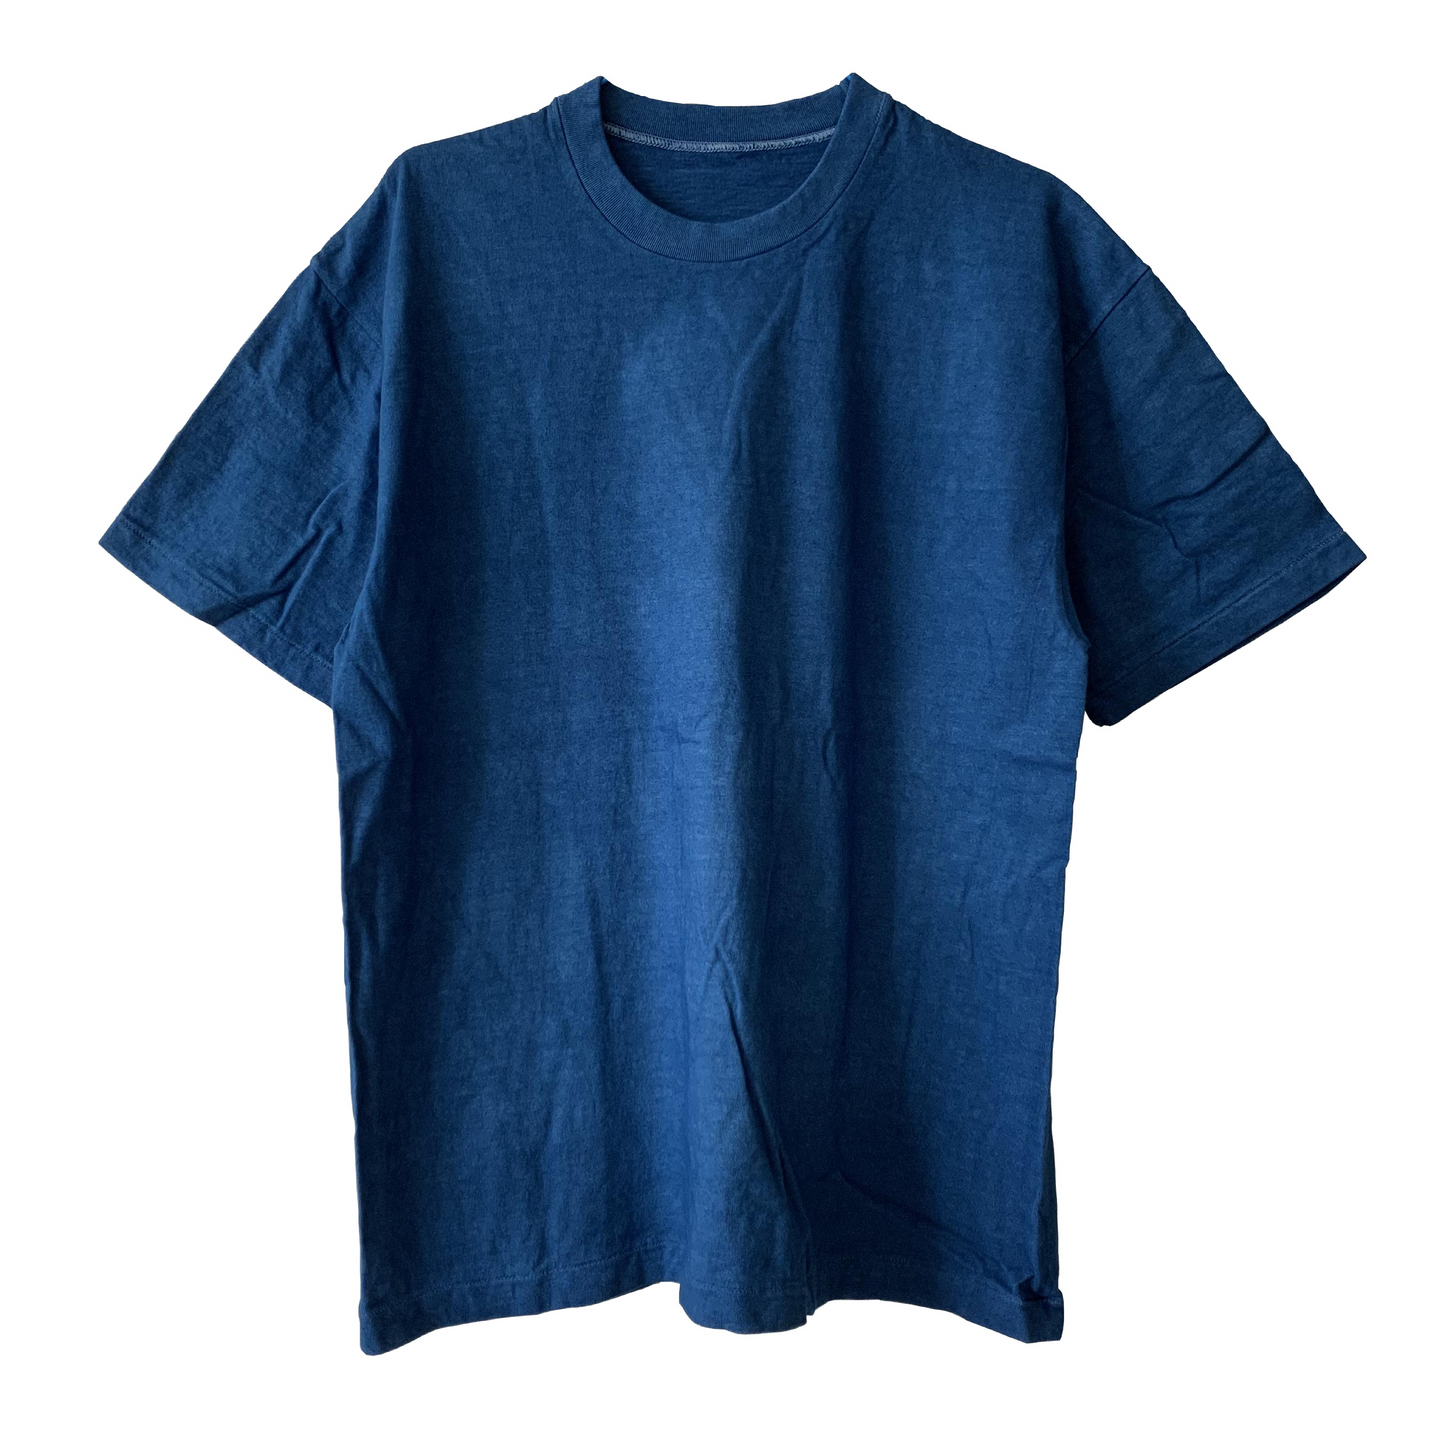 Japanese made round body T-shirt indigo dyed (indigo)